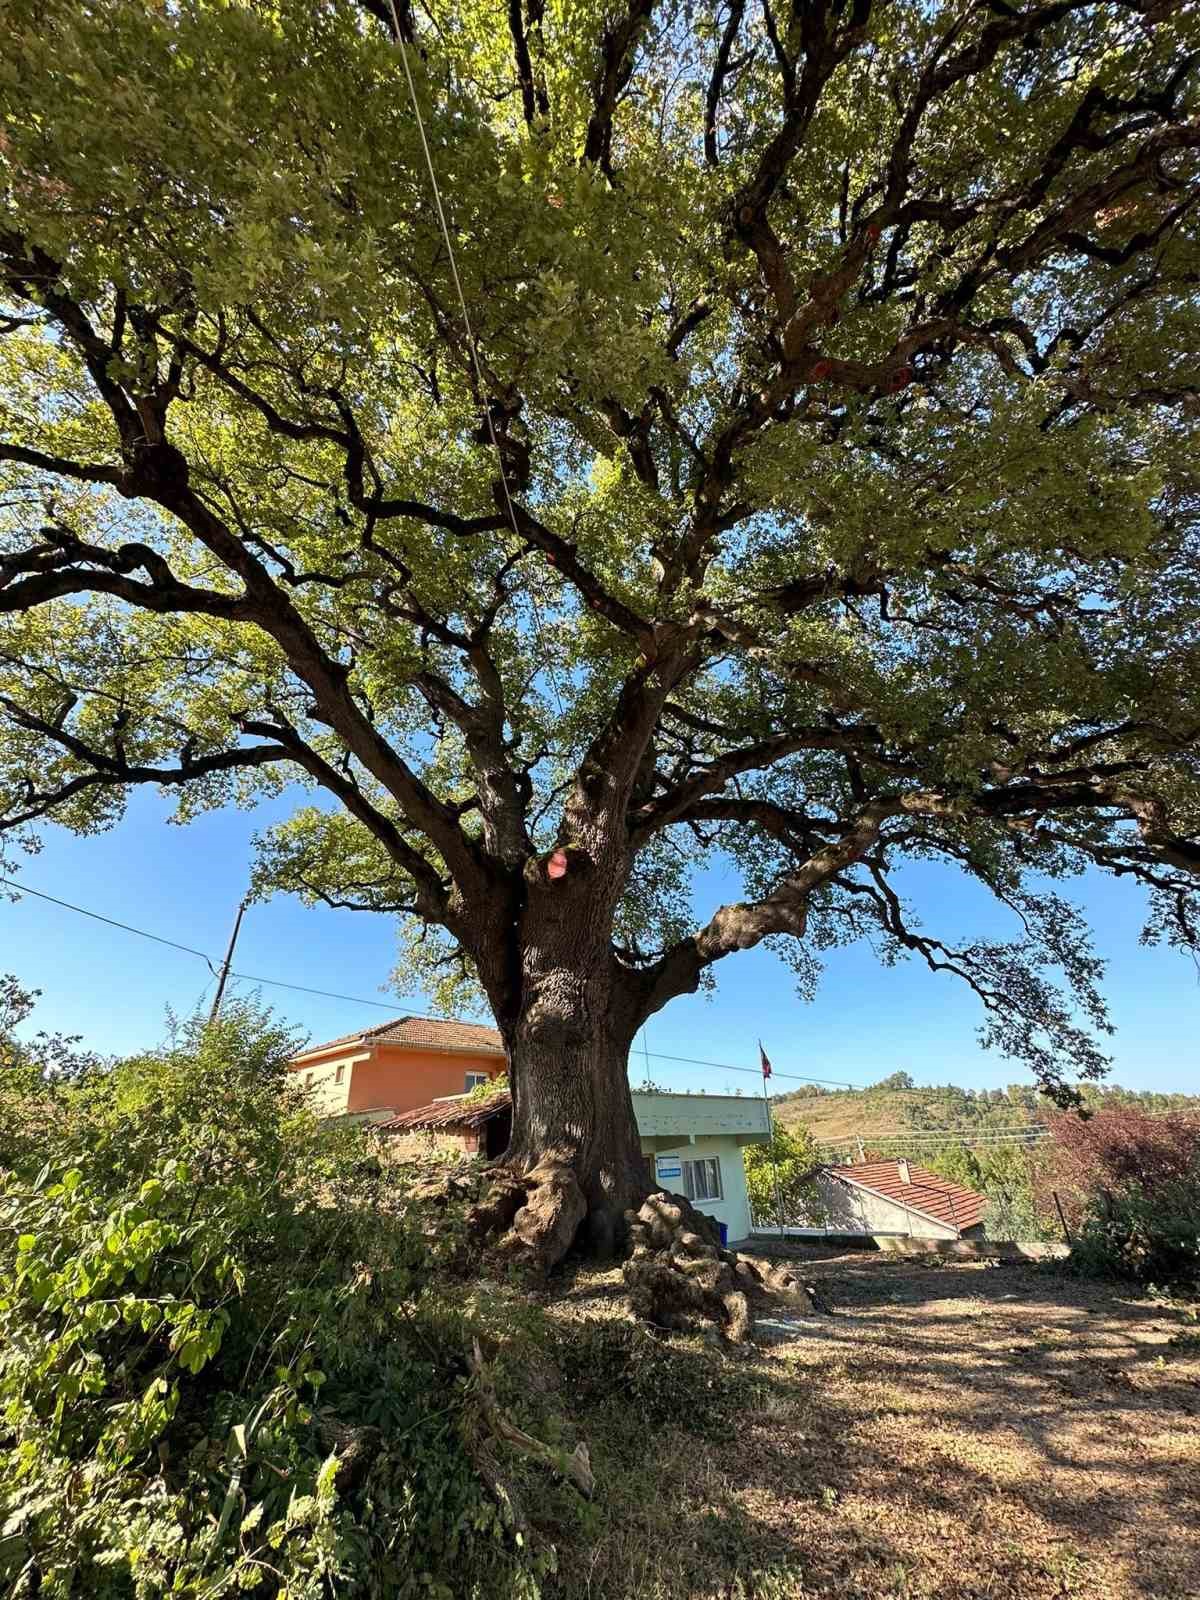 Türkeli’nin tarihi ağacı "Koca Meşe" emin ellerde 